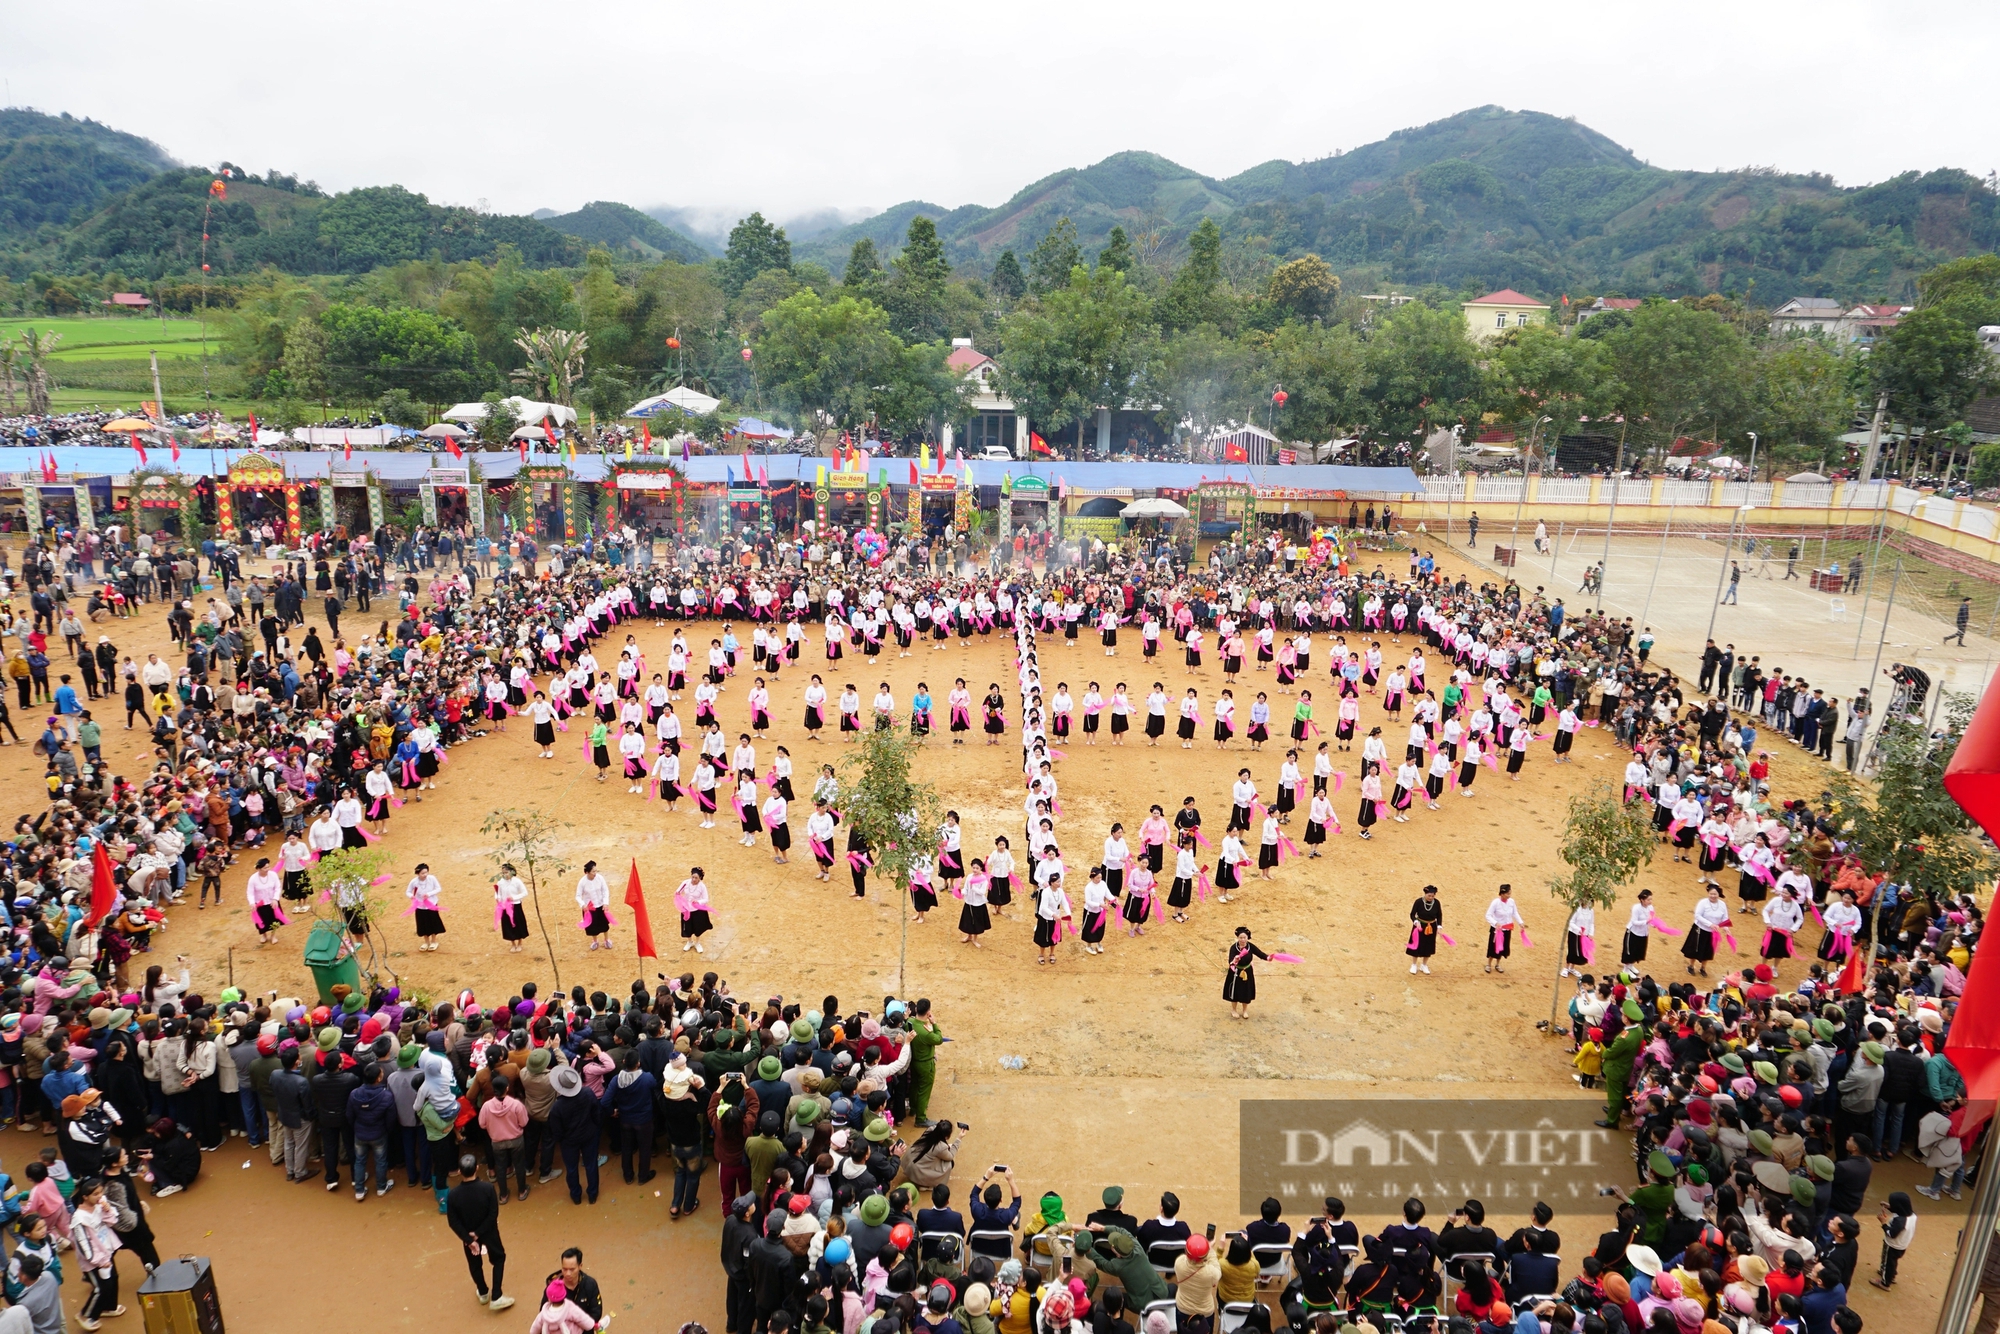 Giữ gìn văn hóa các dân tộc ở "đất ngọc" Lục Yên qua hàng loạt lễ hội mùa Xuân- Ảnh 1.